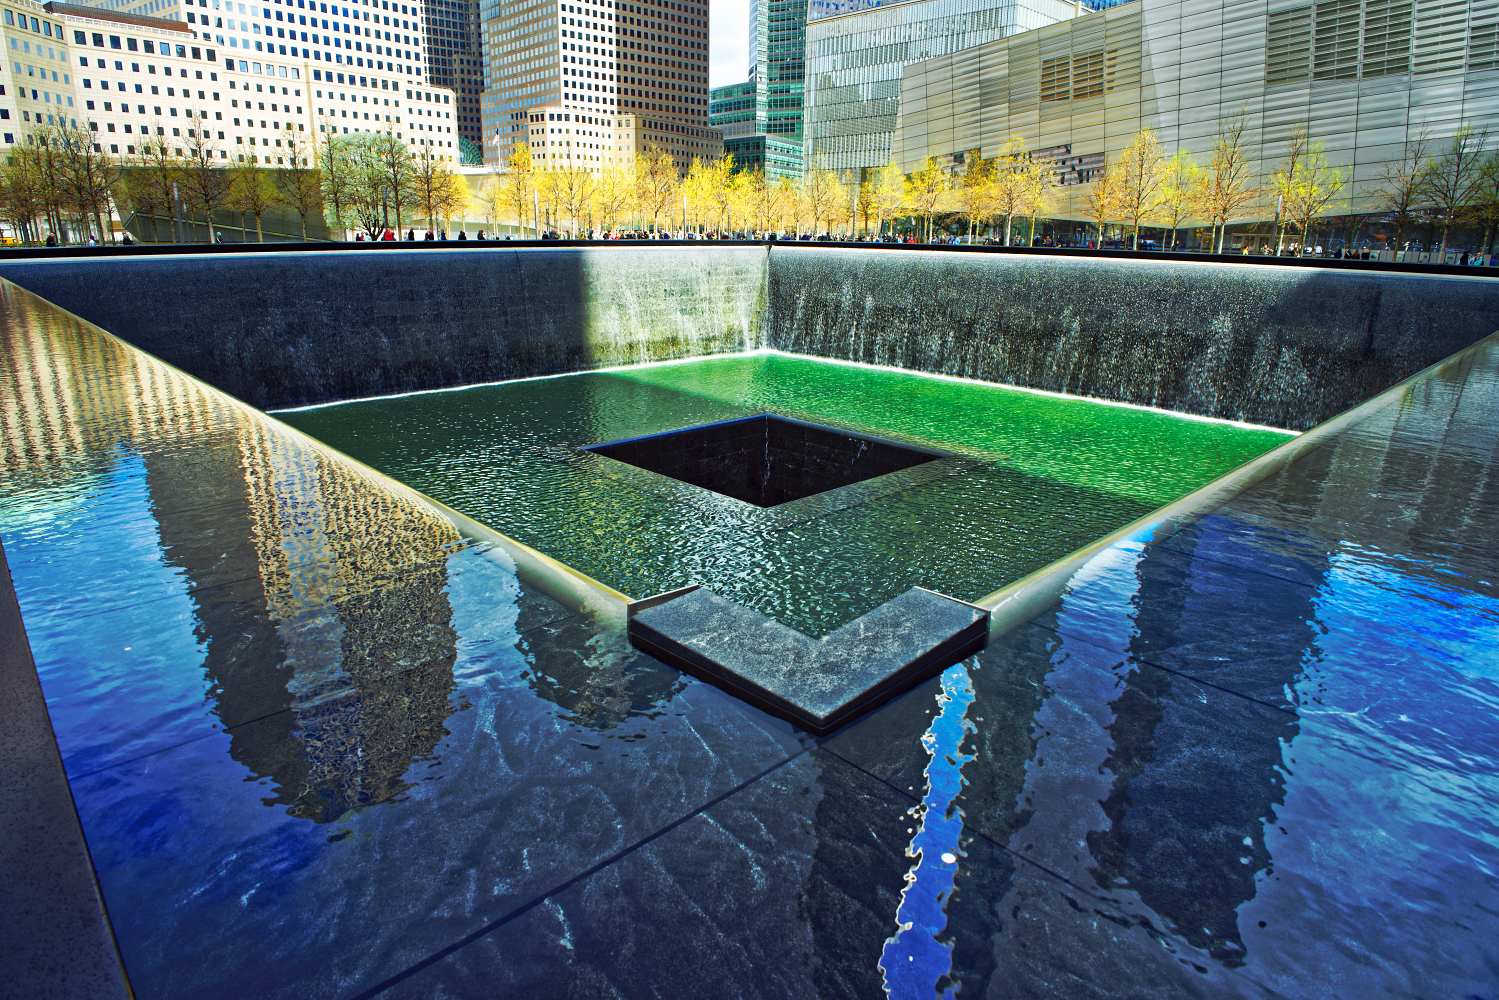 The 9/11 Memorial